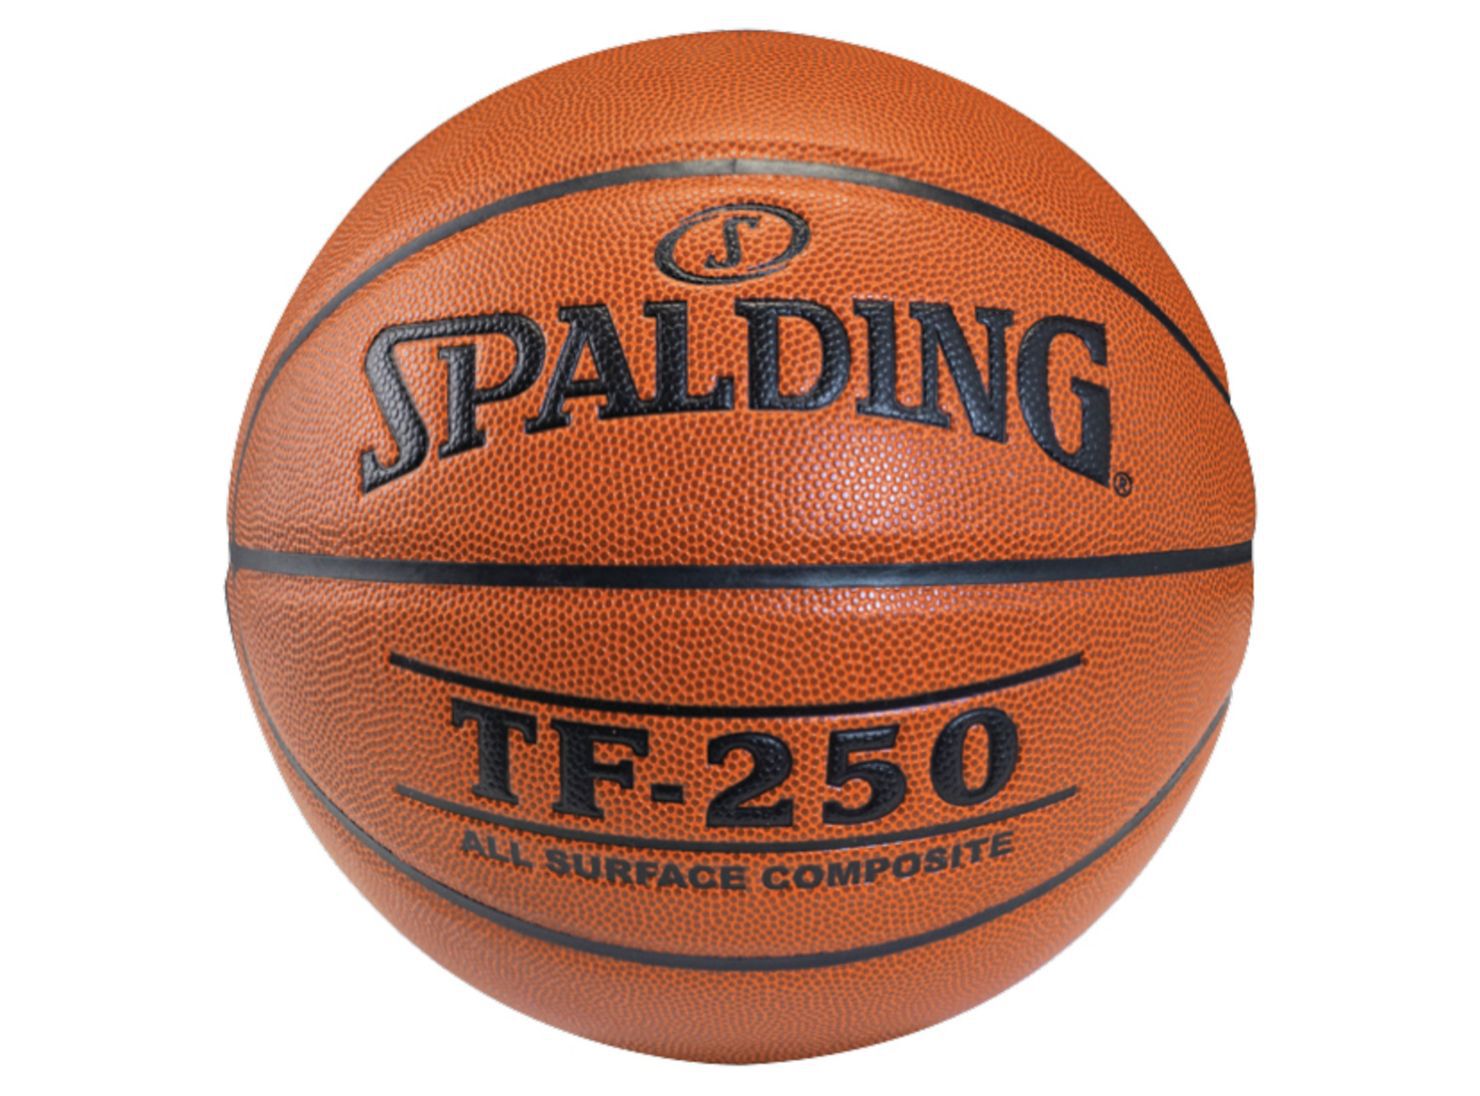 Pelota de Basketball Spalding Talla 6 - Básquetbol